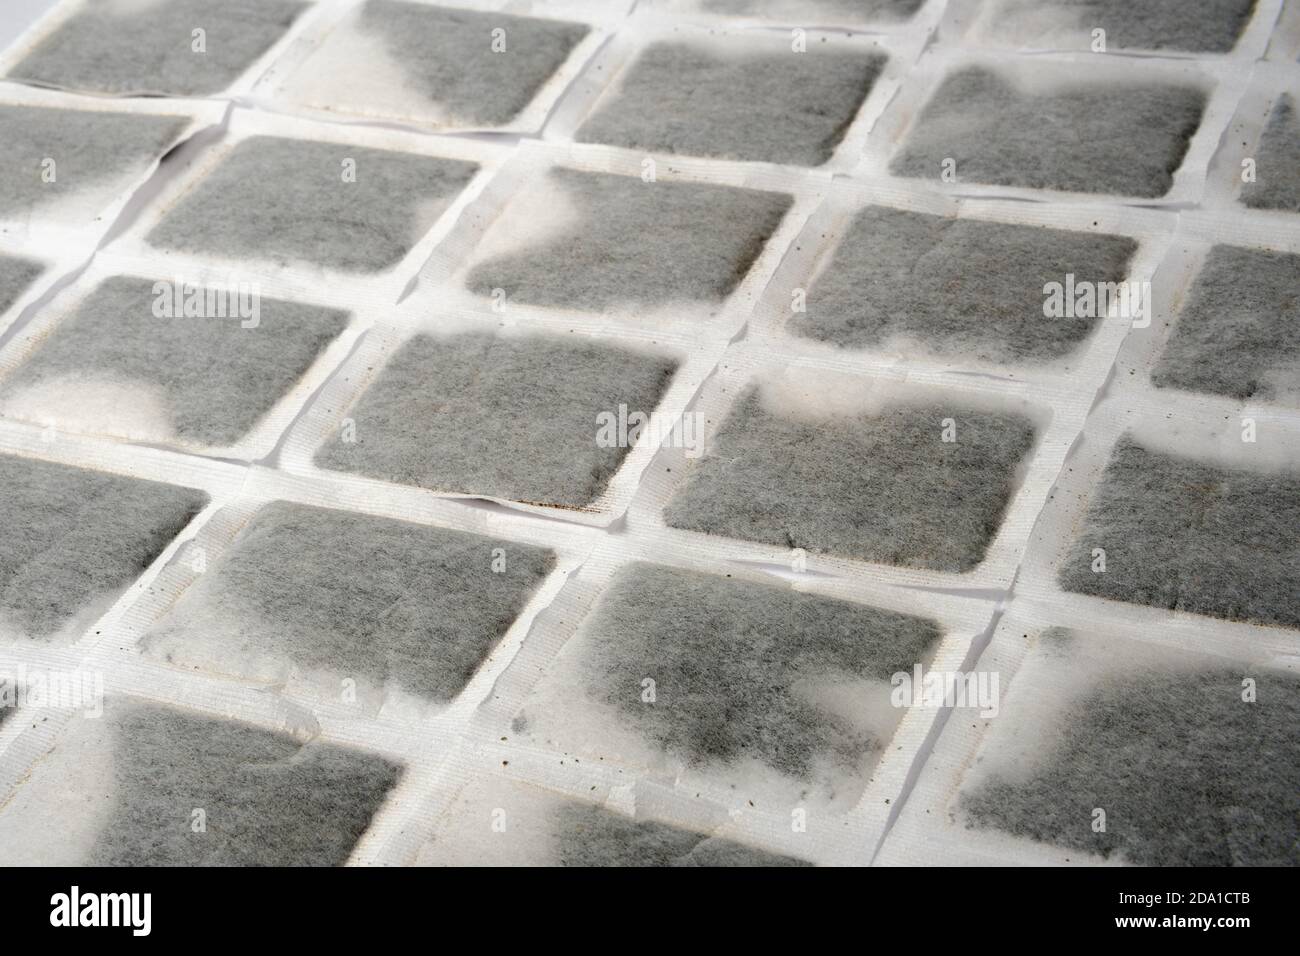 Englisches Teebeutel-Muster. Mehrere Teebeutel nebeneinander auf der flachen Oberfläche ausgerichtet. Stockfoto